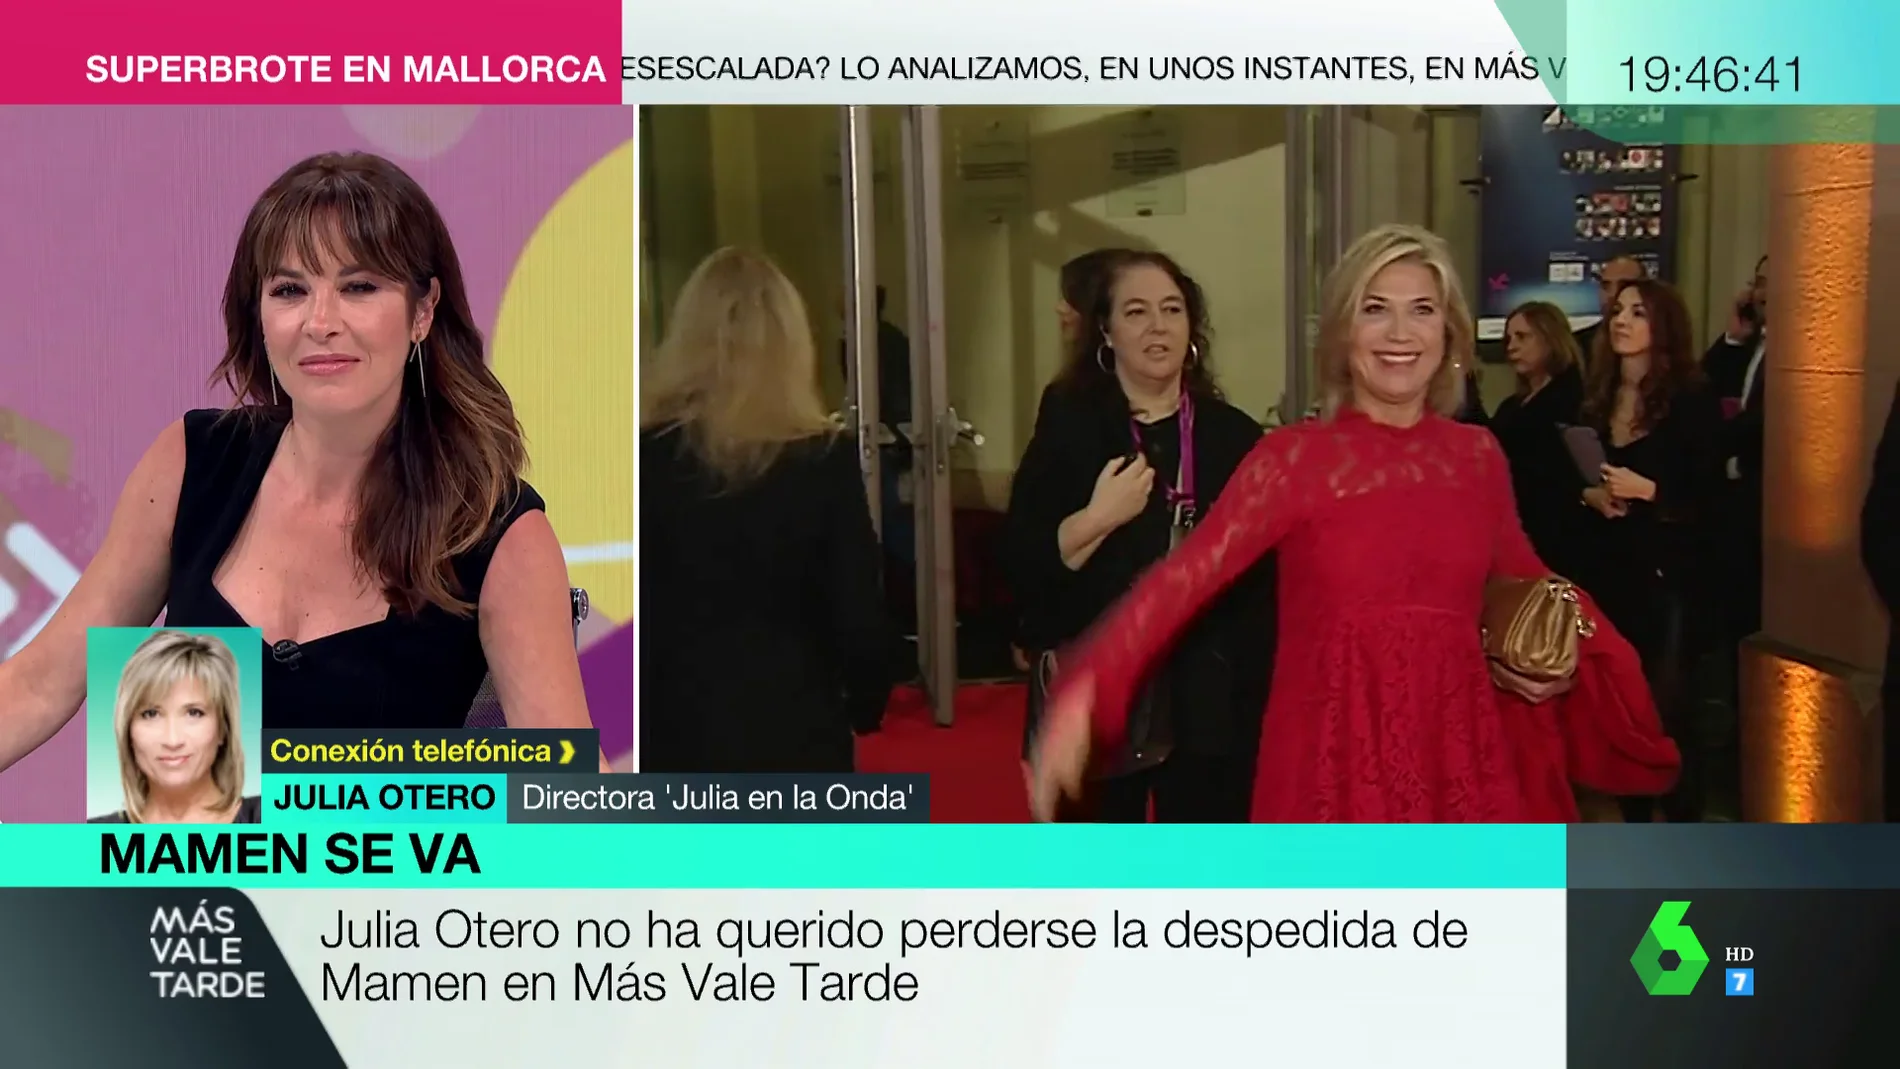 La emotiva conversación entre Julia Otero y Mamen Mendizábal en su ultimo programa: "Estoy deseando que te pongas bien"